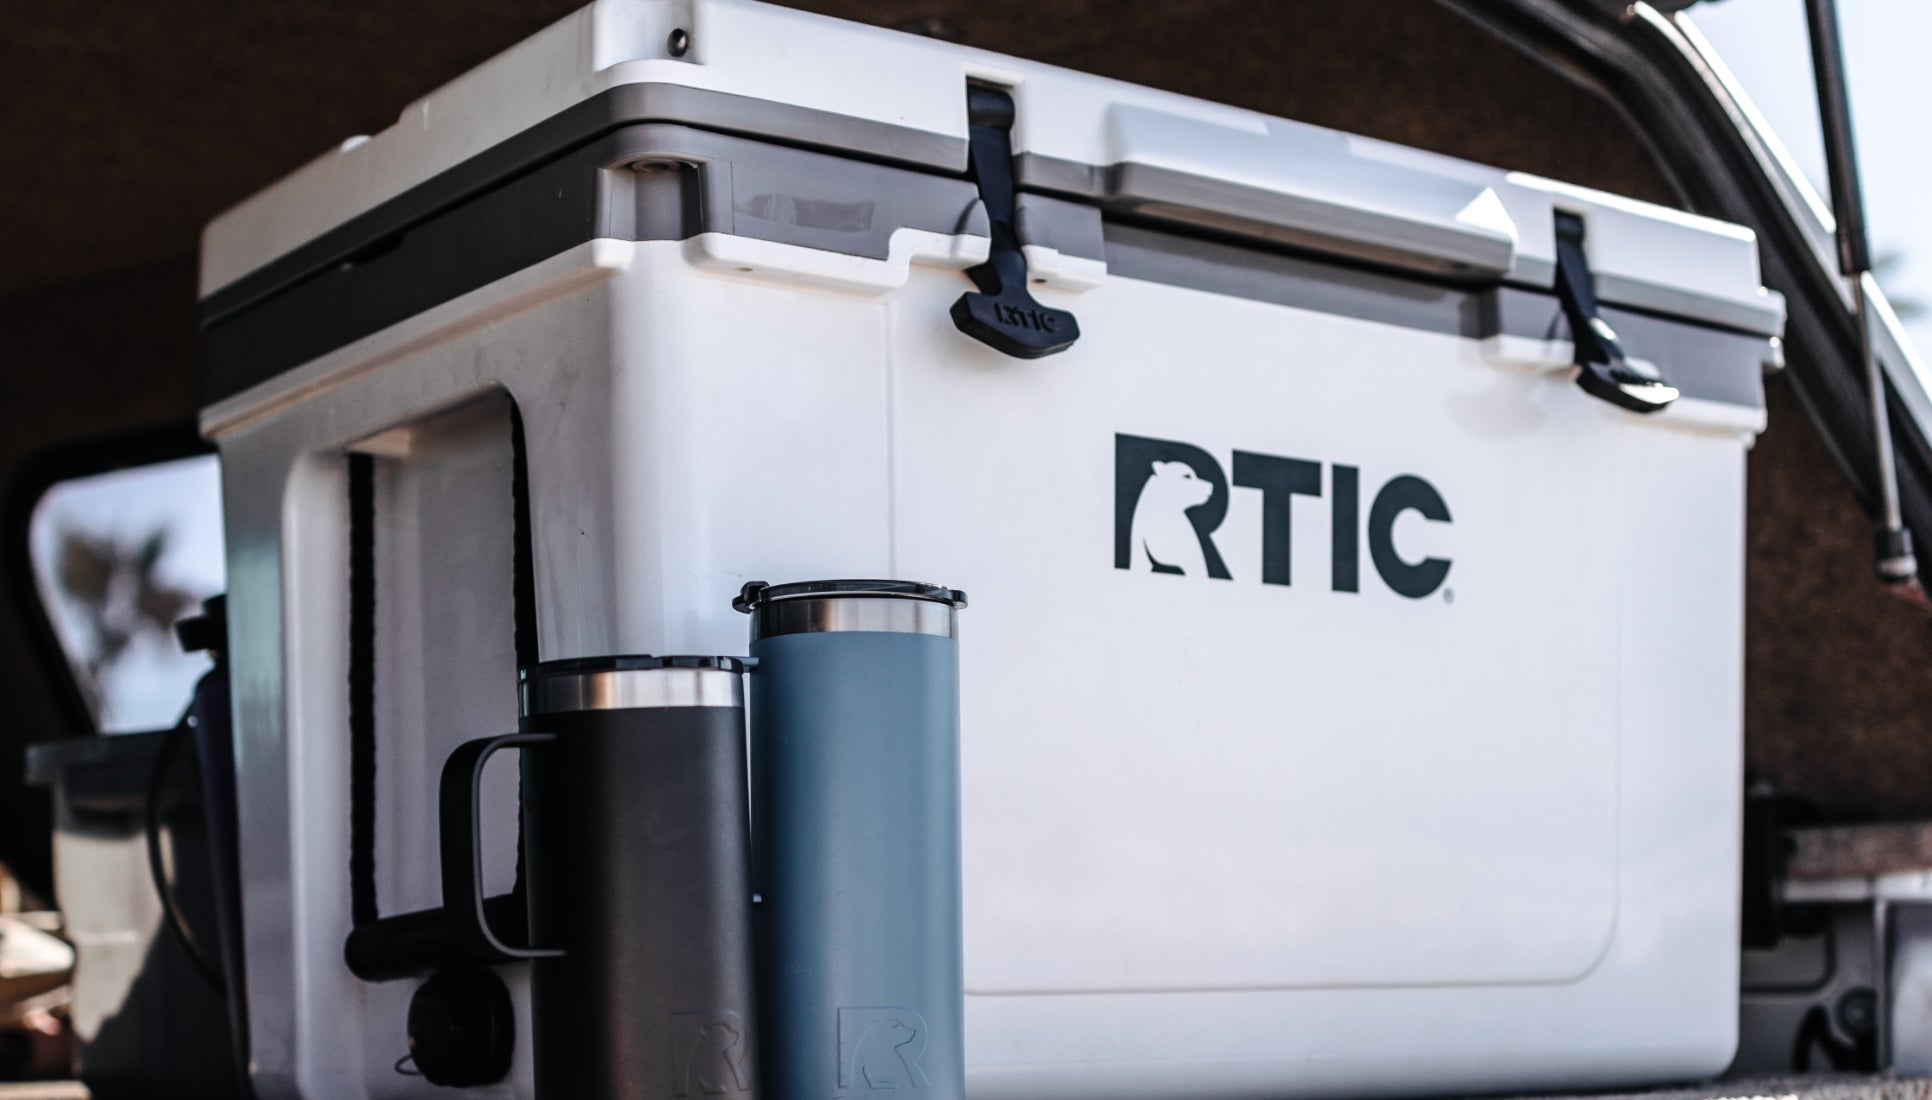 RTIC 52 QT Ultra-Light Cooler - A Portable Lightweight Cooler